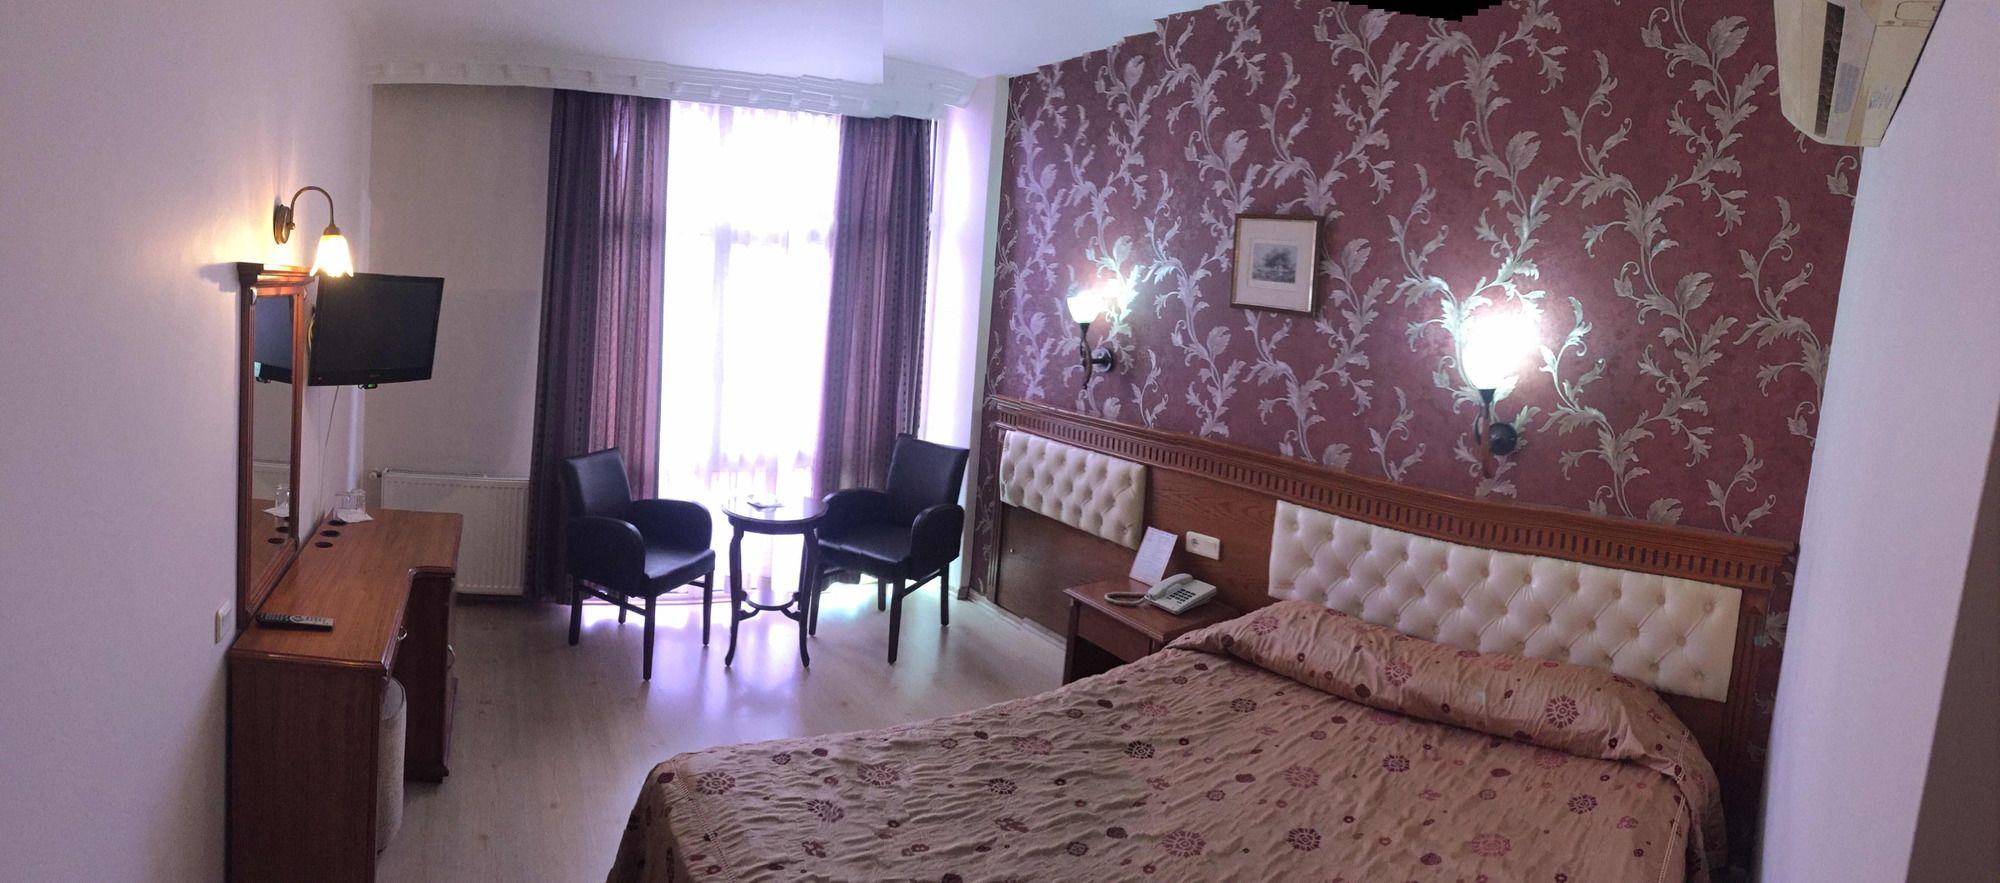 Comodidades do quarto Ebru Hotel